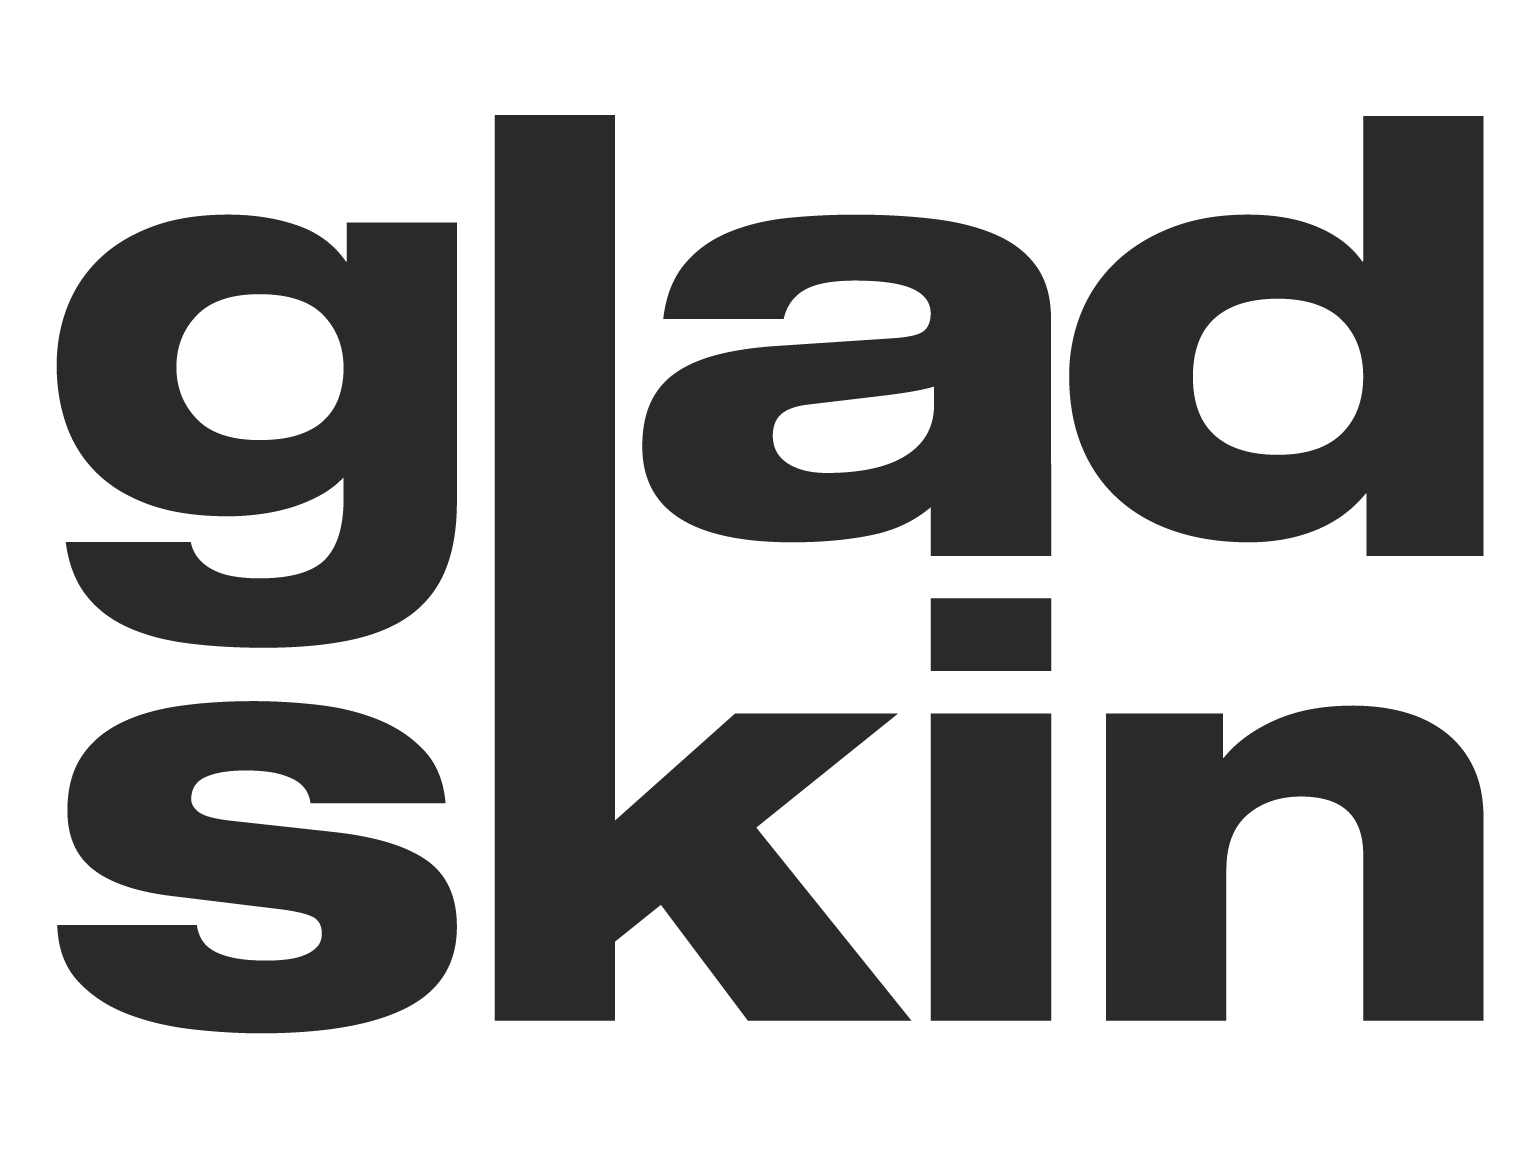 Gladskin Logo